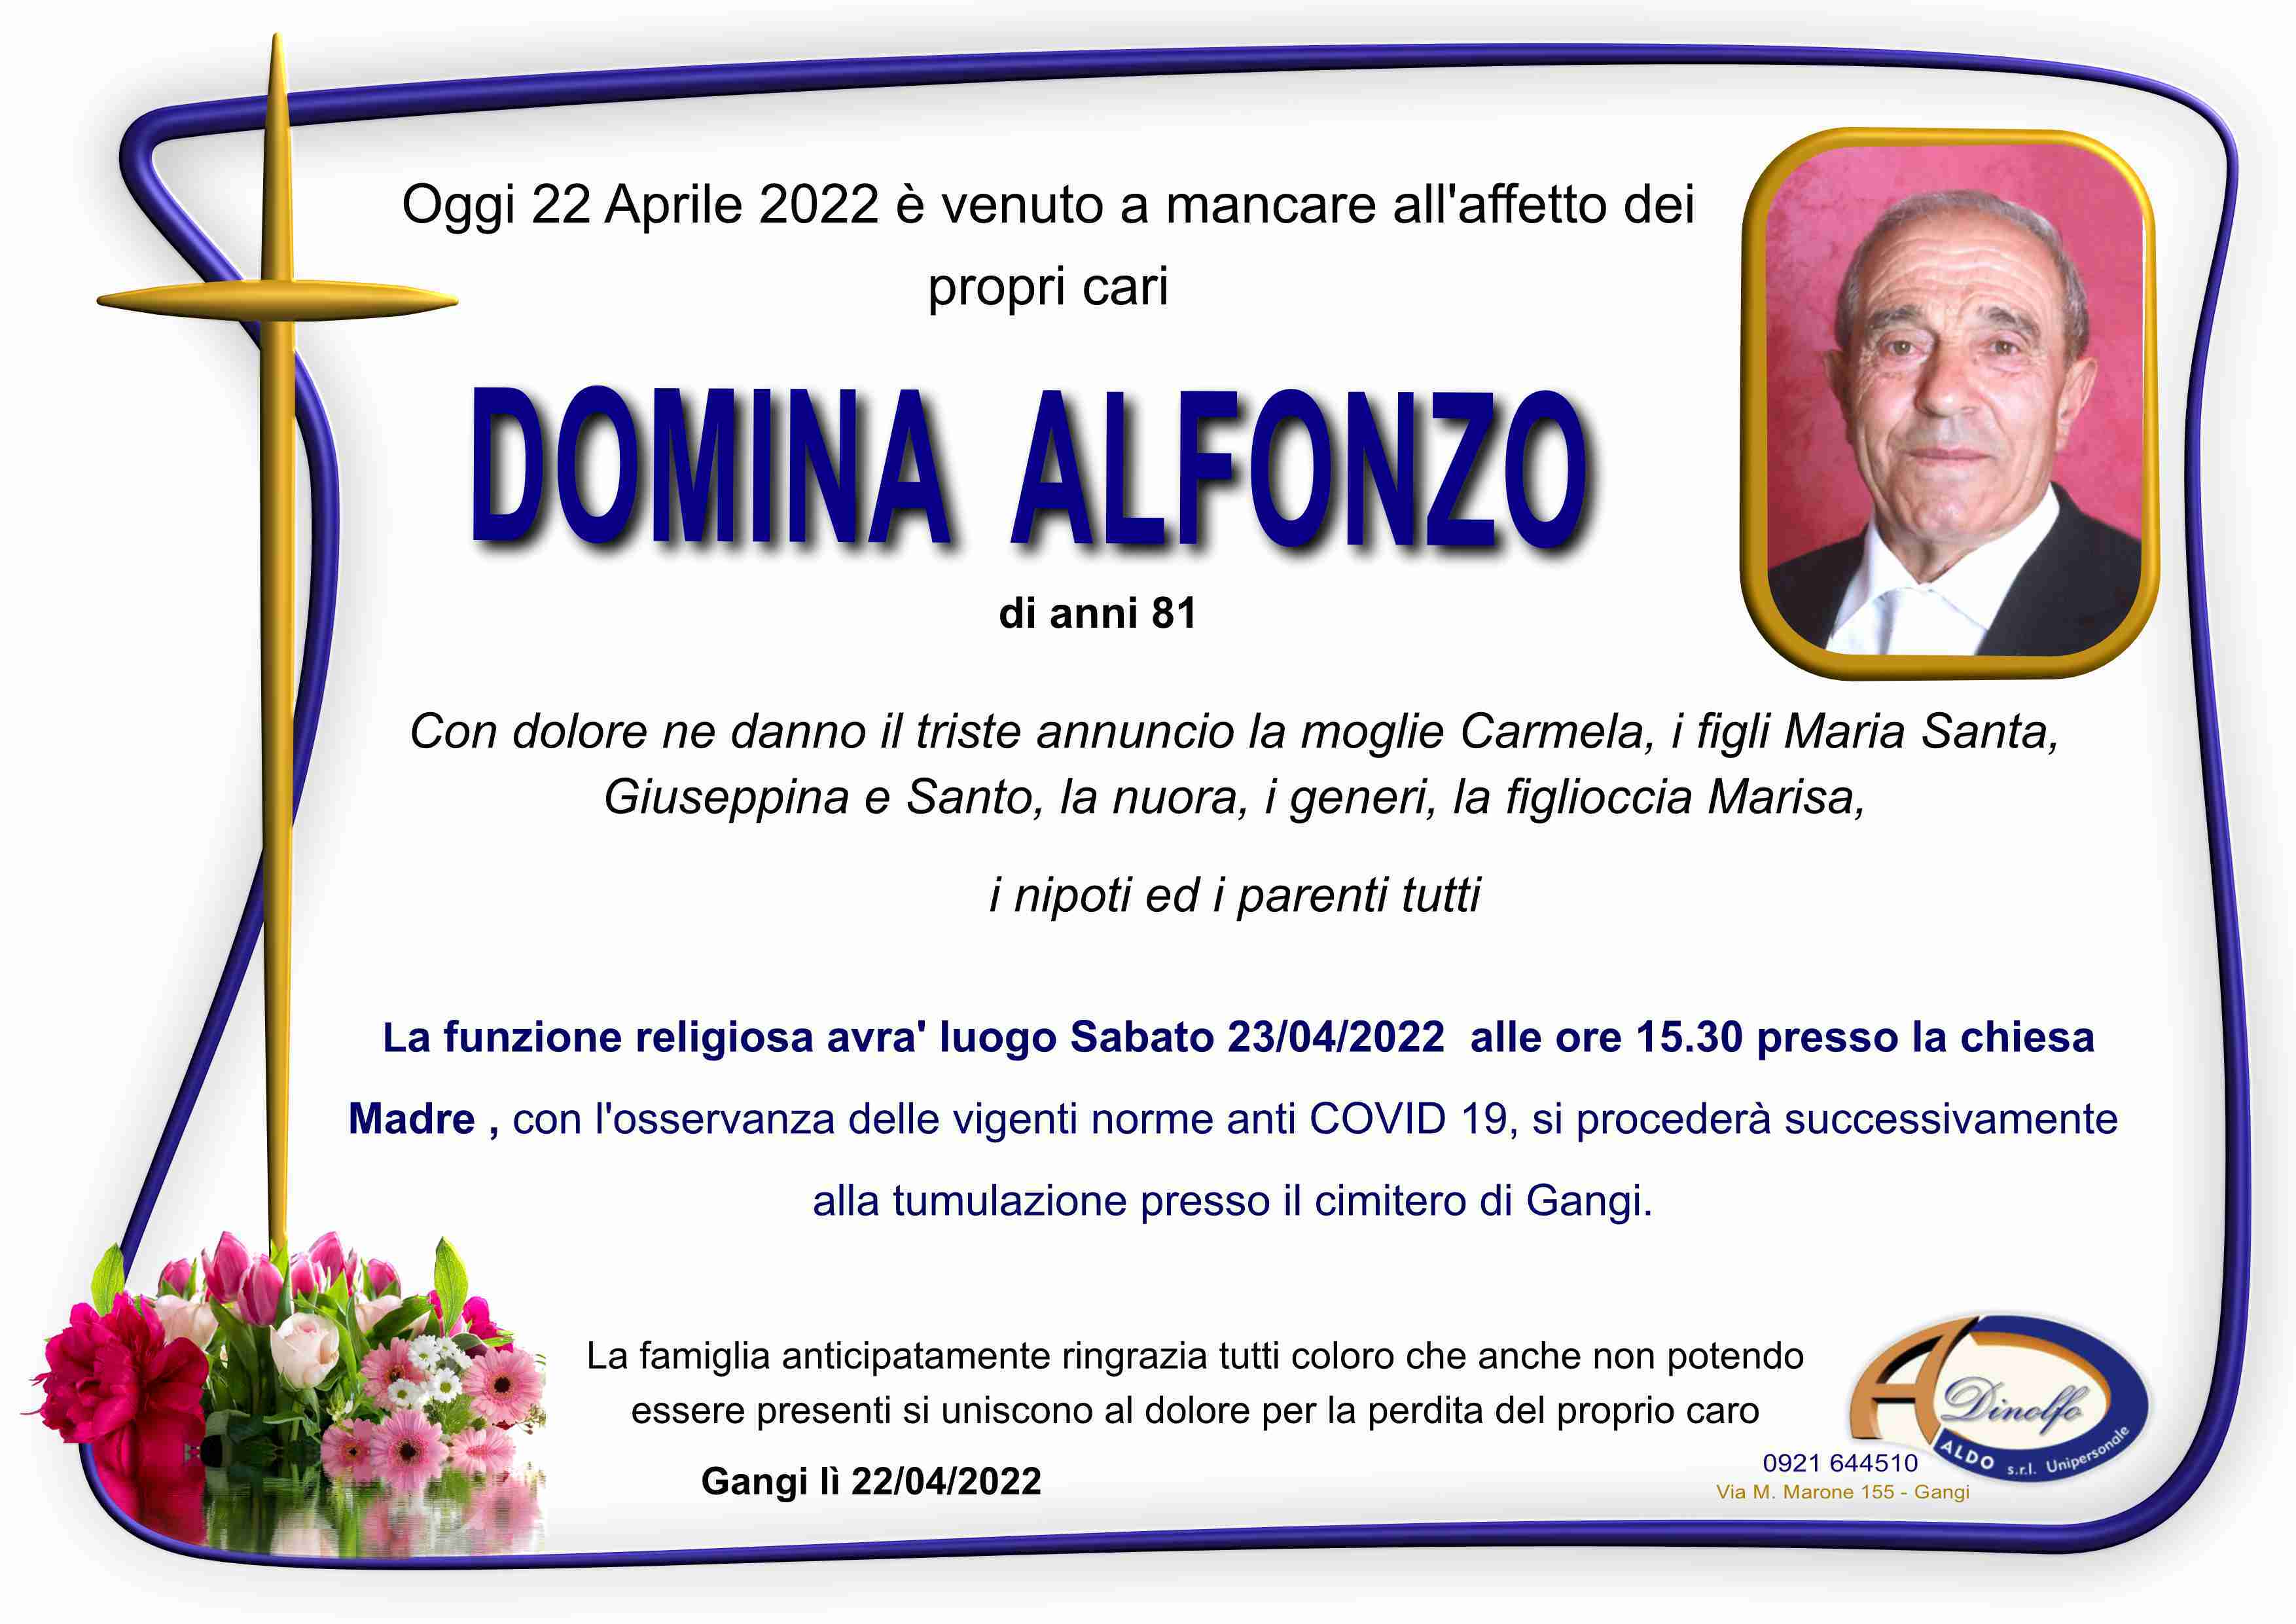 Alfonzo Domina